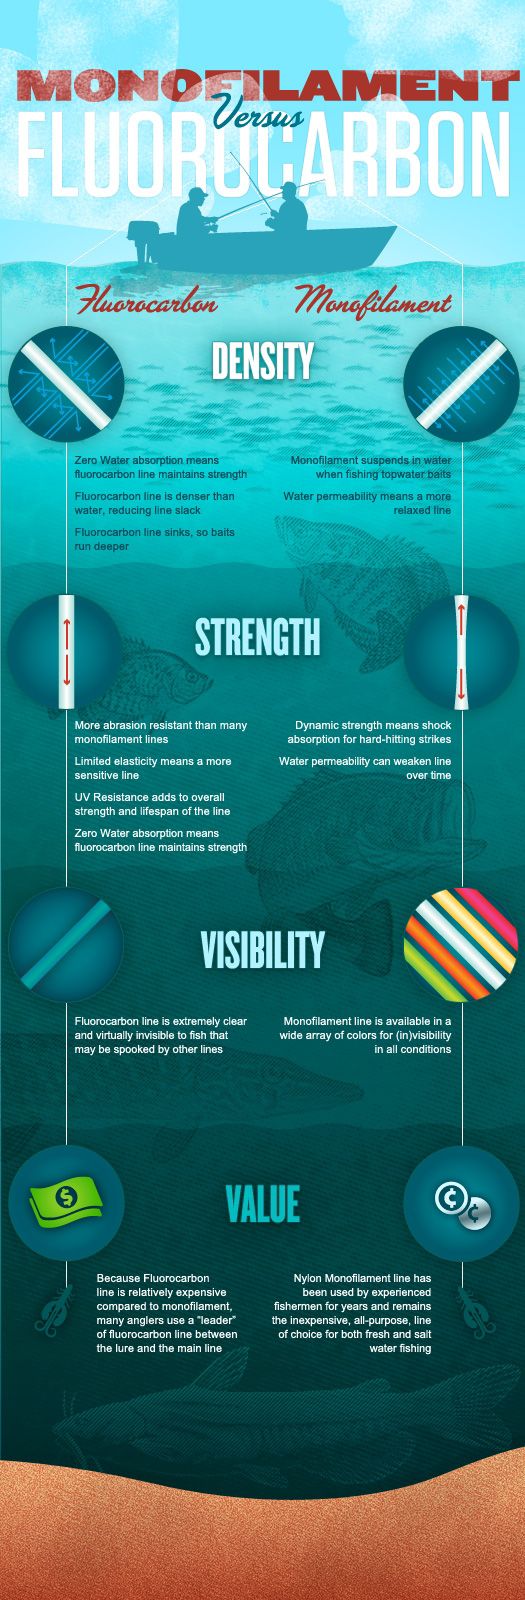 http://www.saltstrong.com/wp-content/uploads/berkley-infographic.jpeg